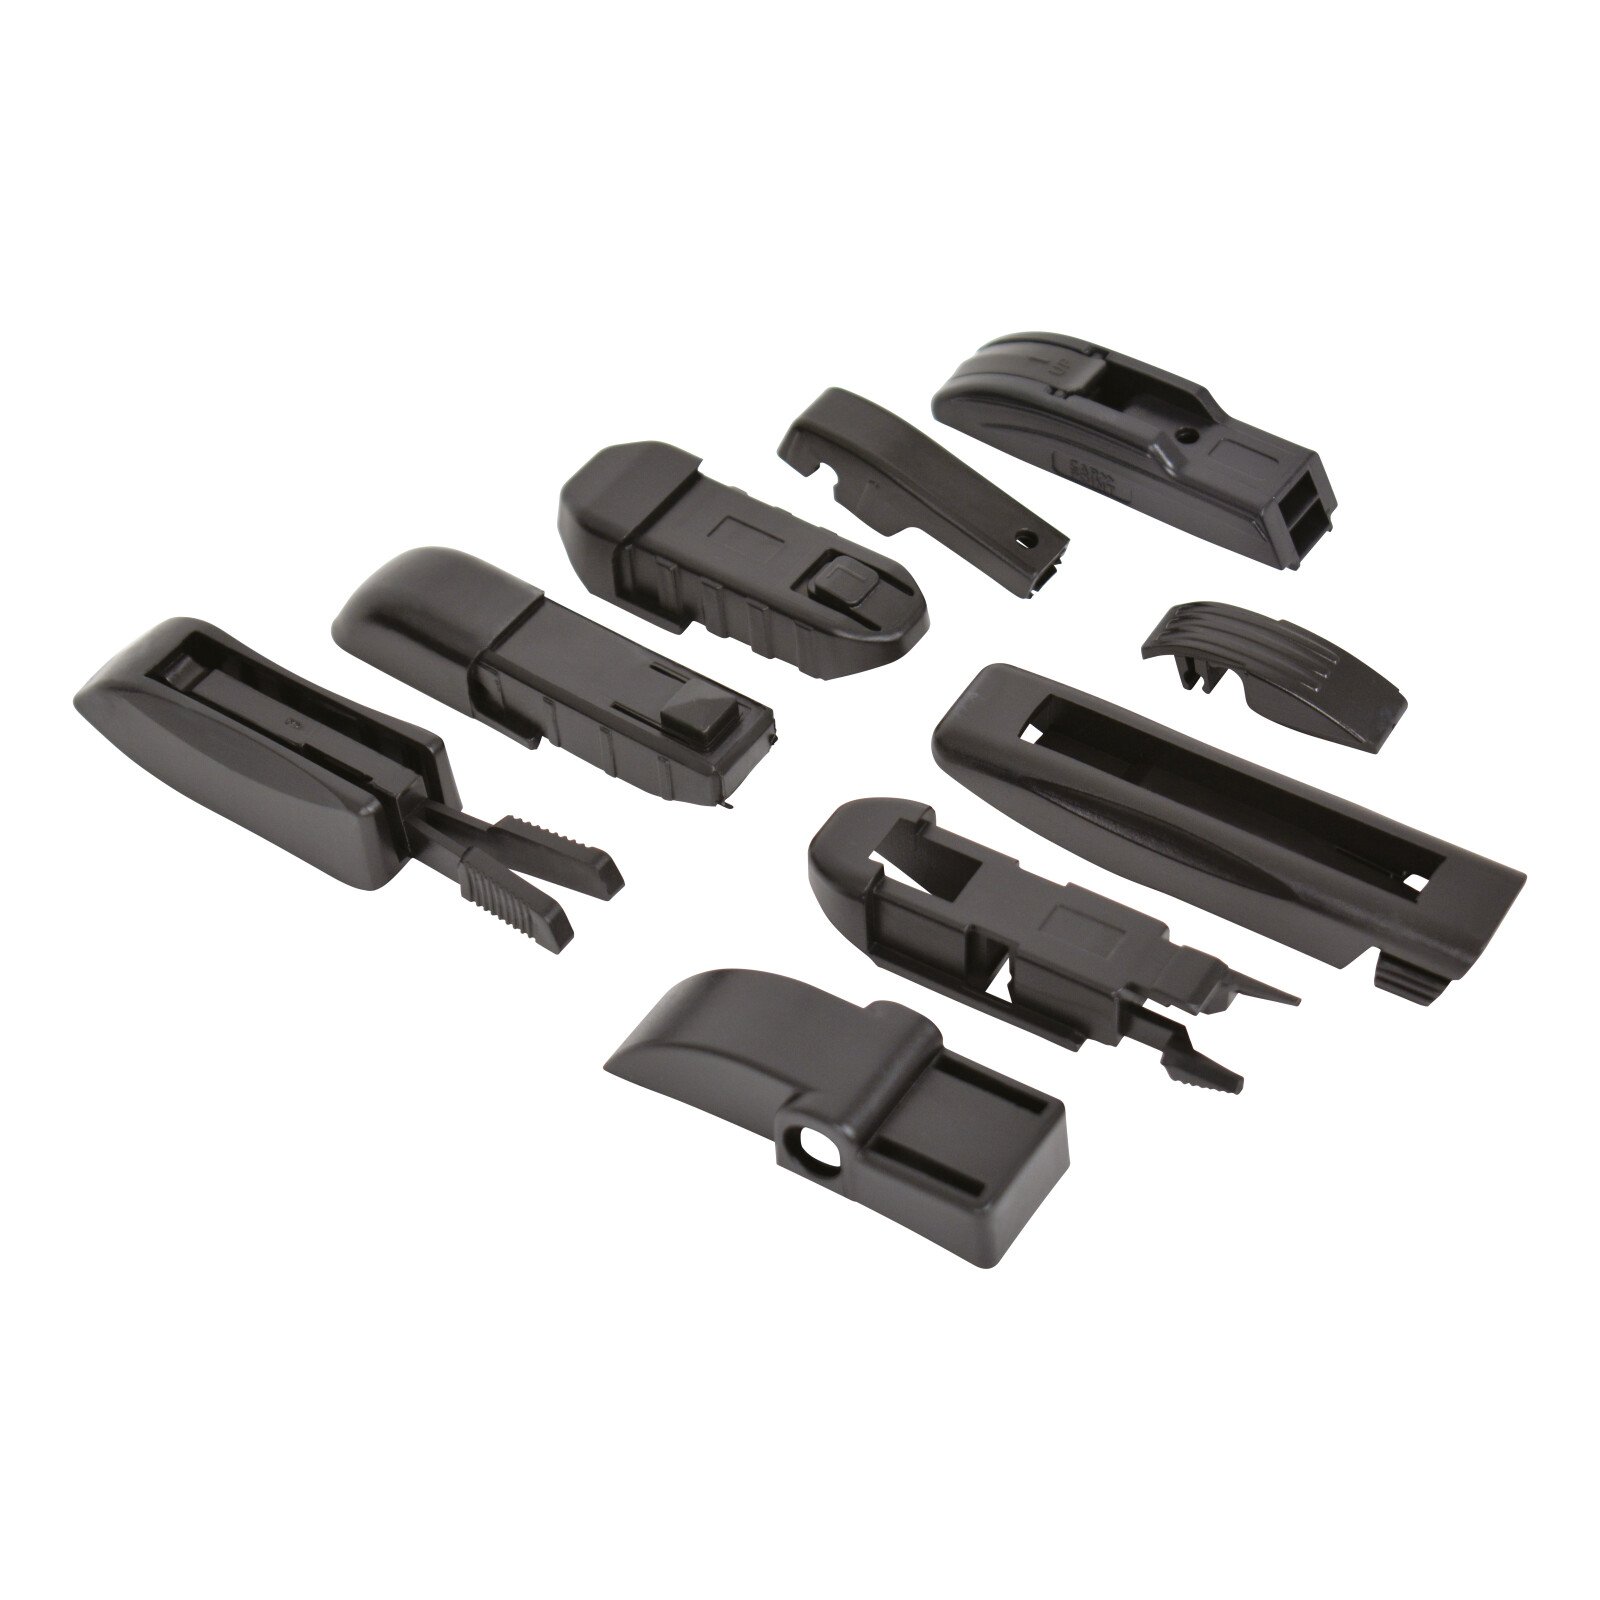 NXT Aero-Comfort wiper blade 9 adaptors 53cm (21“) - 1 pcs thumb